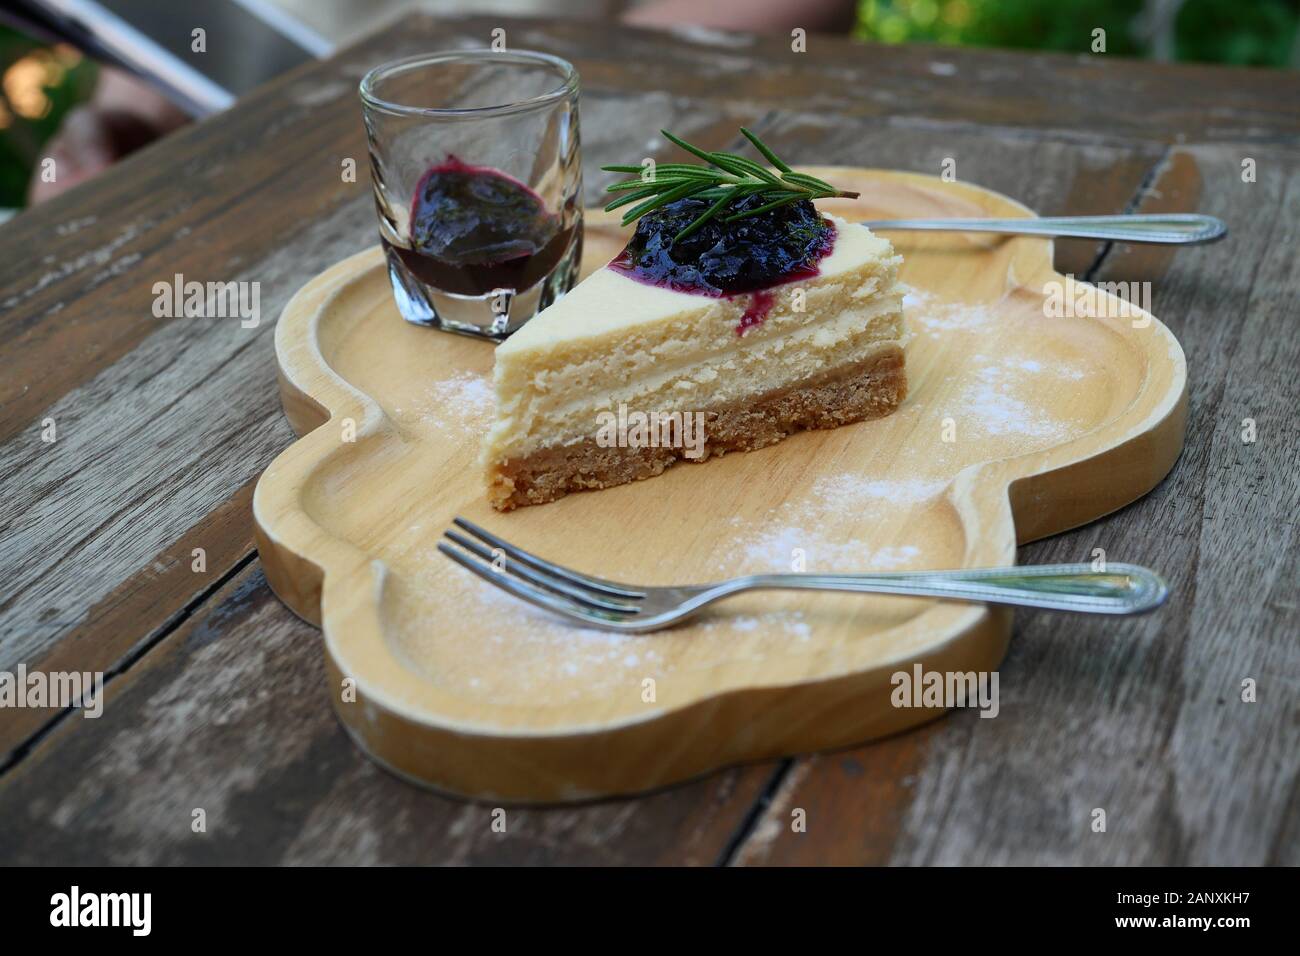 Le gâteau au fromage Camembert garnie de sirop de bleuet avec cuillère et fourchette sur une plaque de bois, un aliment sucré avec brown le tableau en arrière-plan Banque D'Images